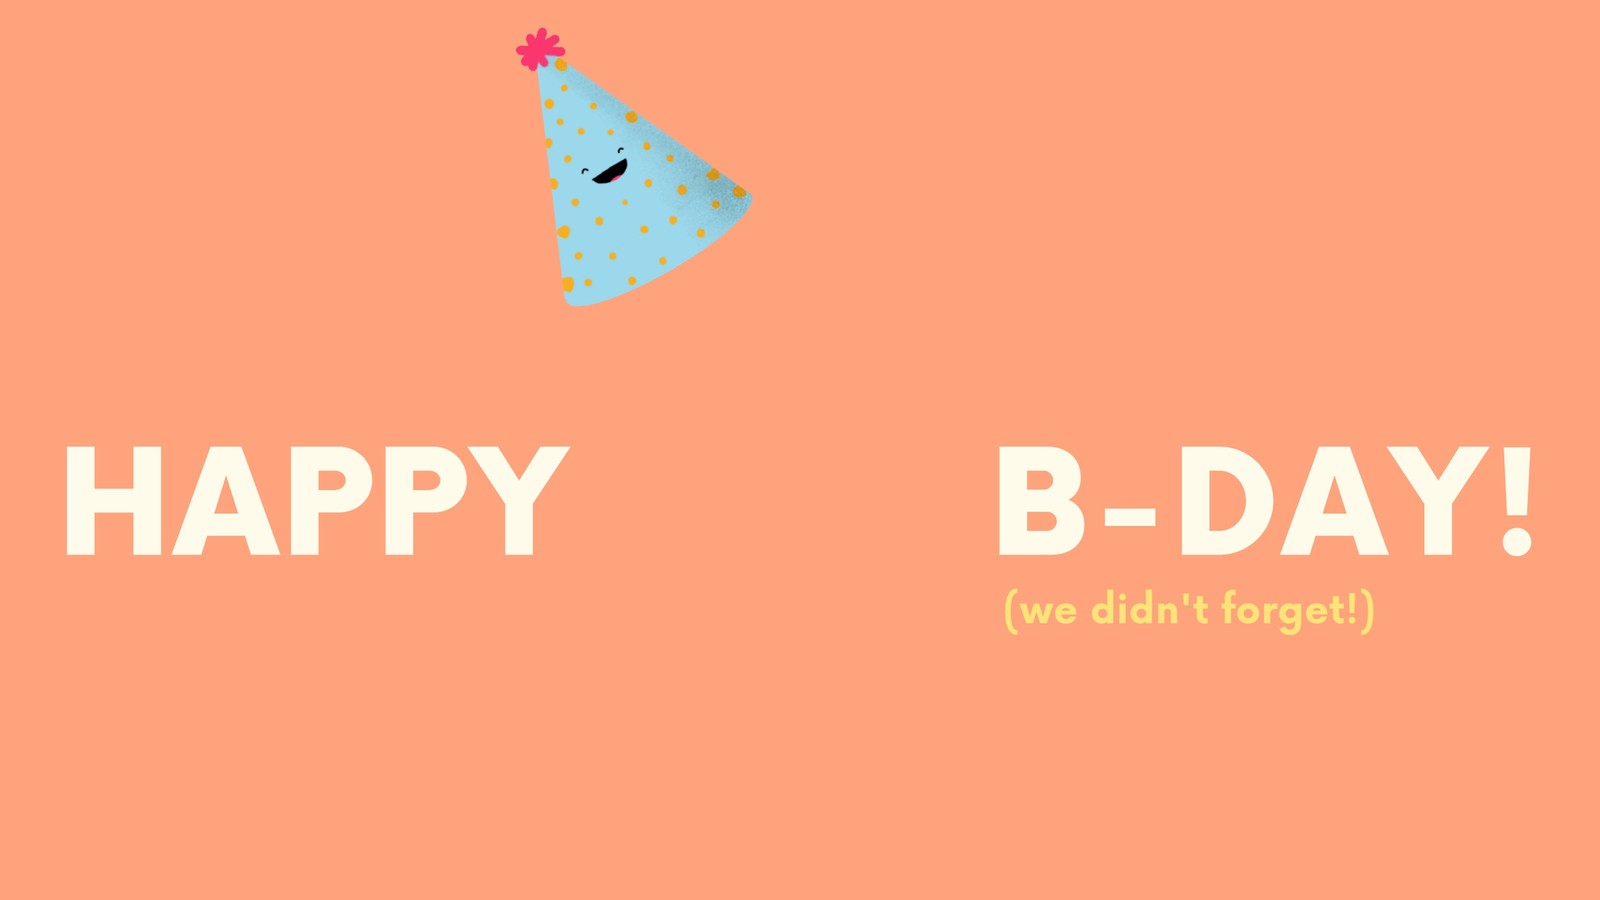 Animated Birthday Hat: Hãy là người đầu tiên để thành công trong việc tạo ra một bữa tiệc sinh nhật trực tuyến độc đáo với mũ sinh nhật đầy màu sắc. Với những thiết kế hoạt hình tuyệt đẹp, chúng sẽ khiến cho bữa tiệc sinh nhật trở nên không thể quên.